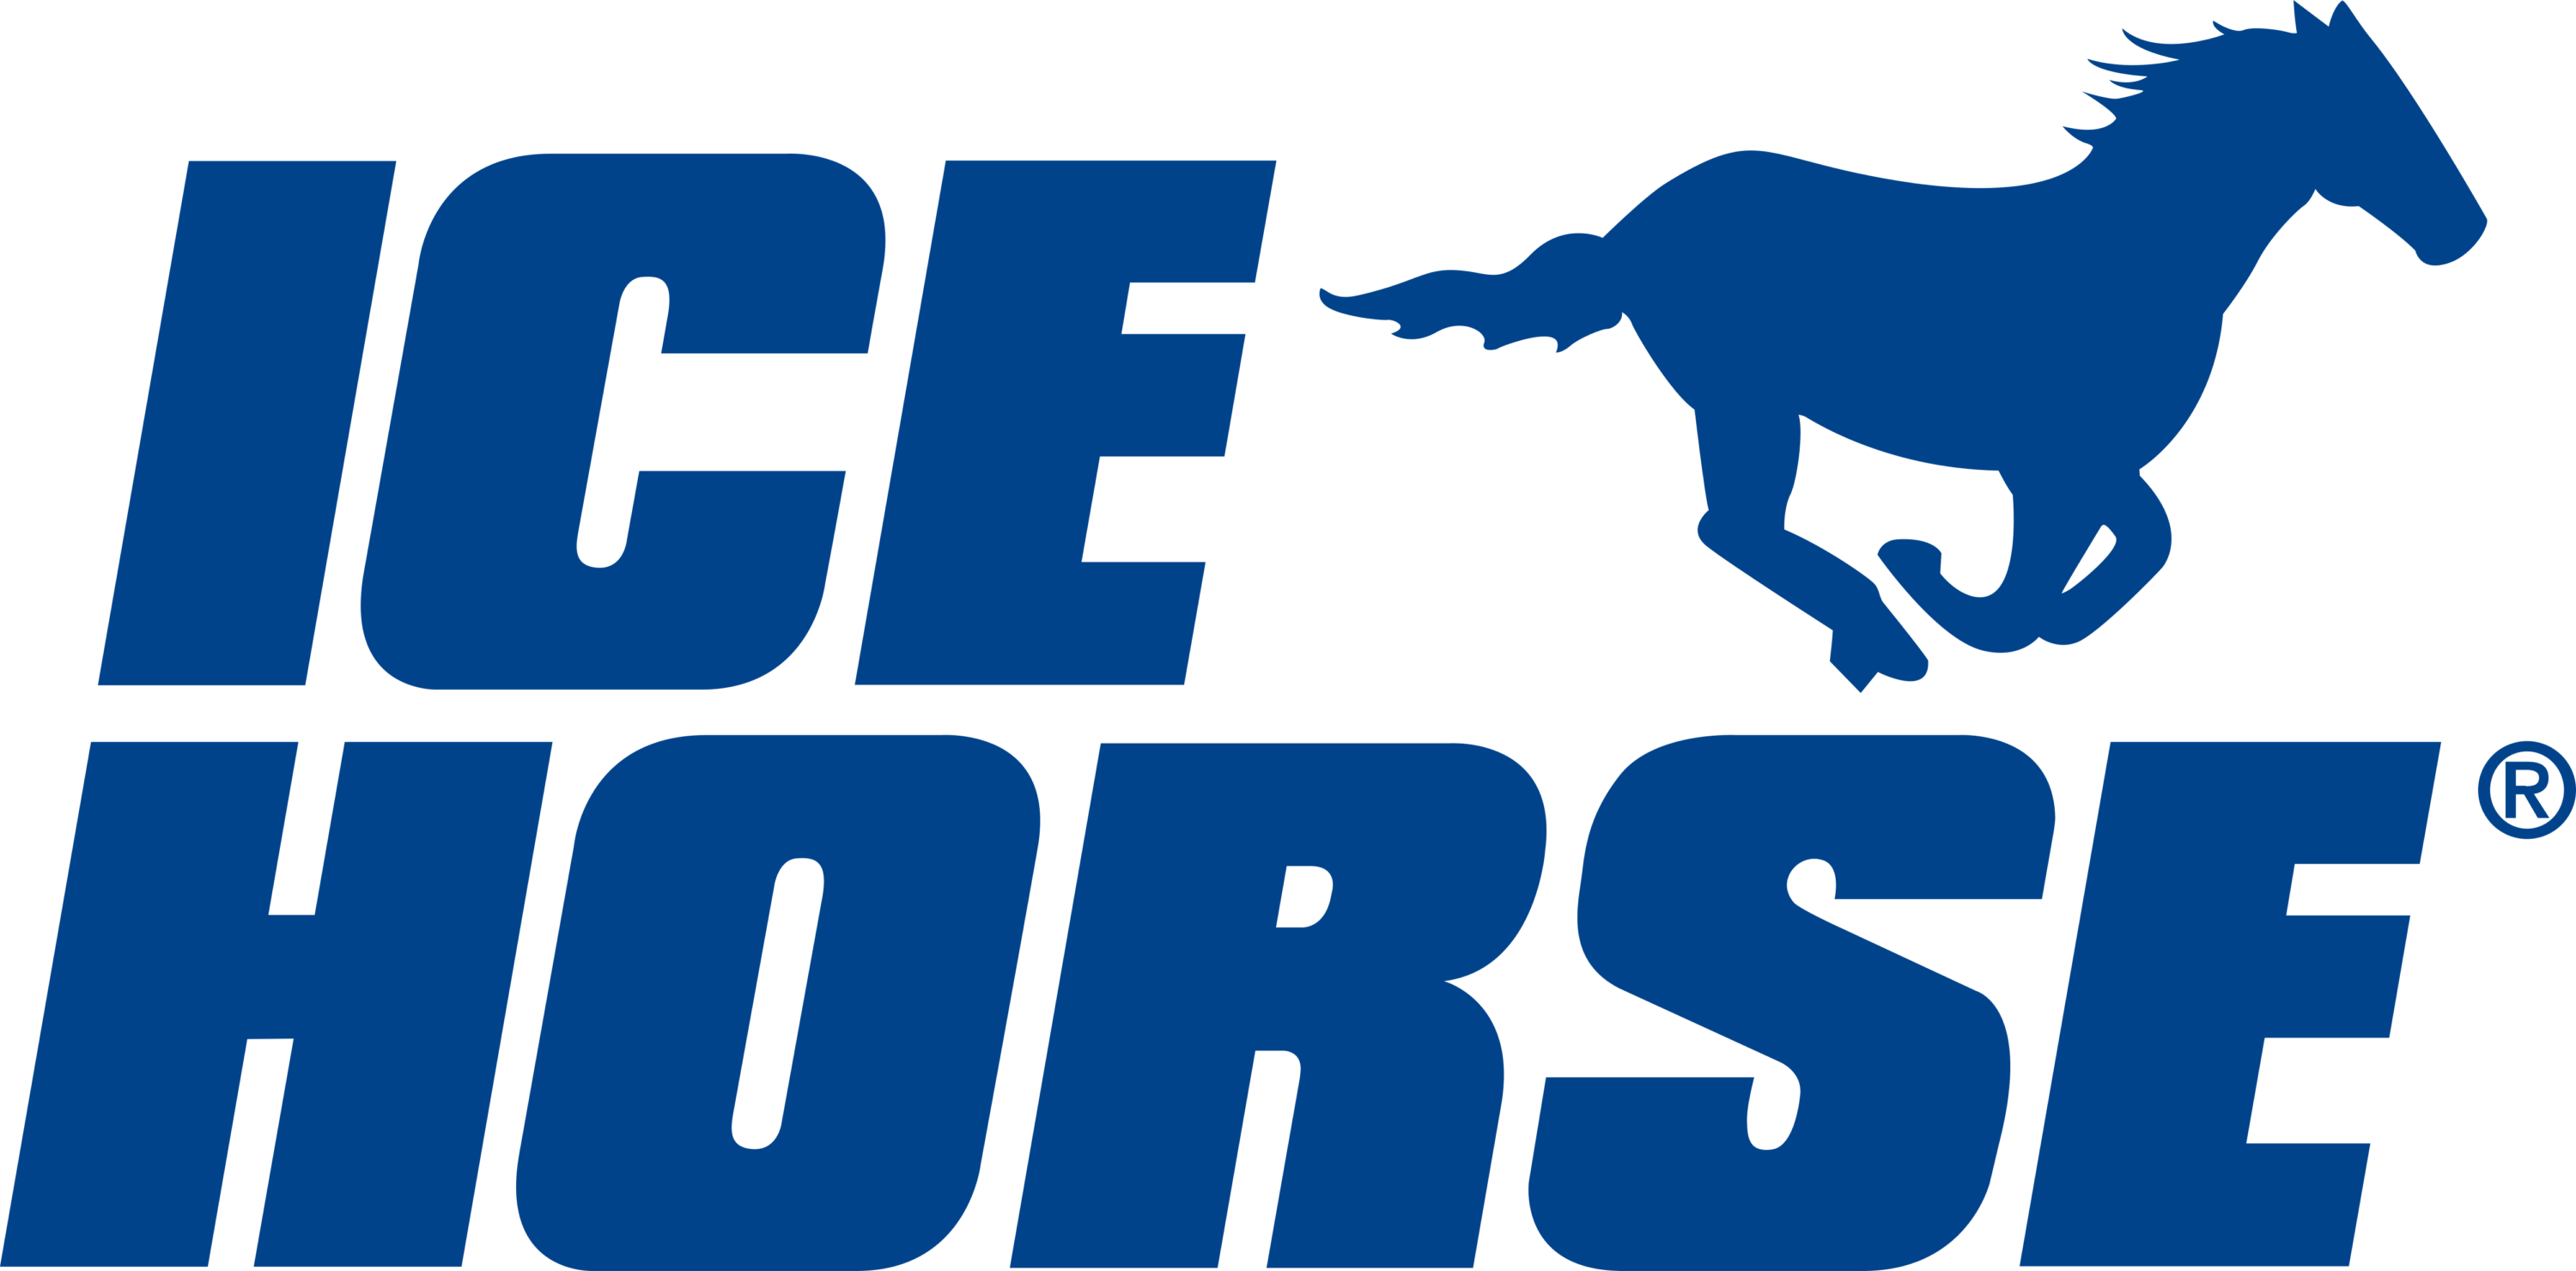 Icehorse Logo